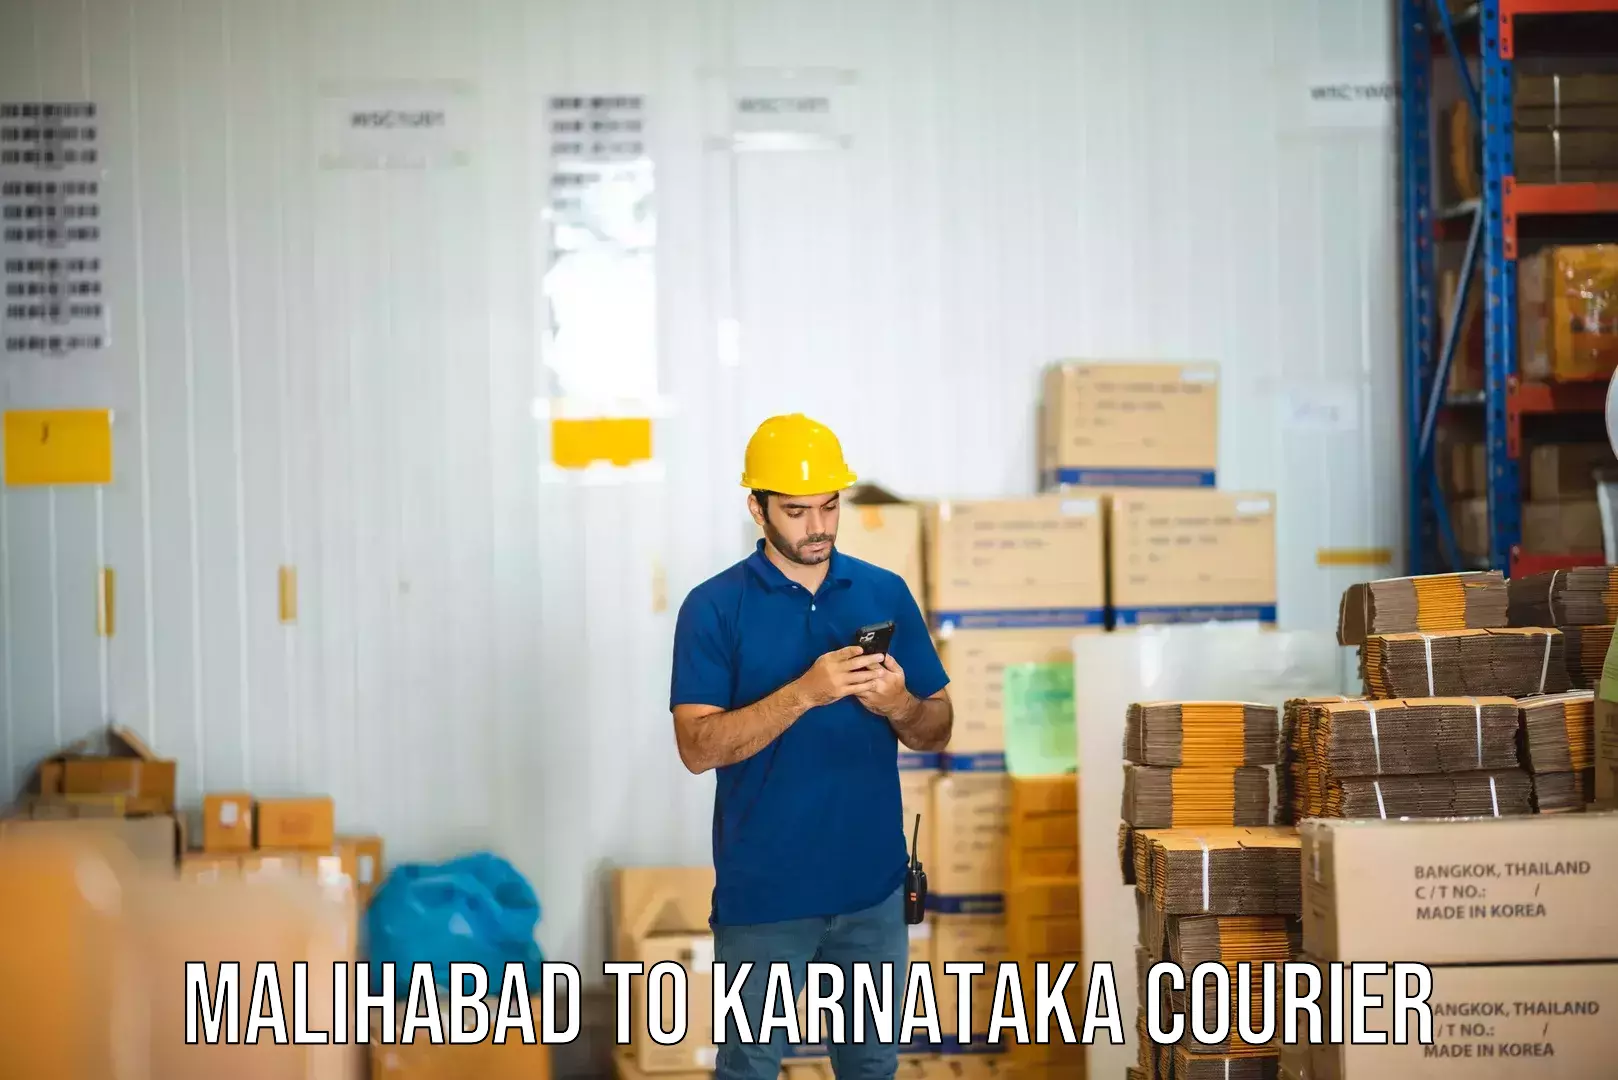 Professional courier handling Malihabad to Mundgod